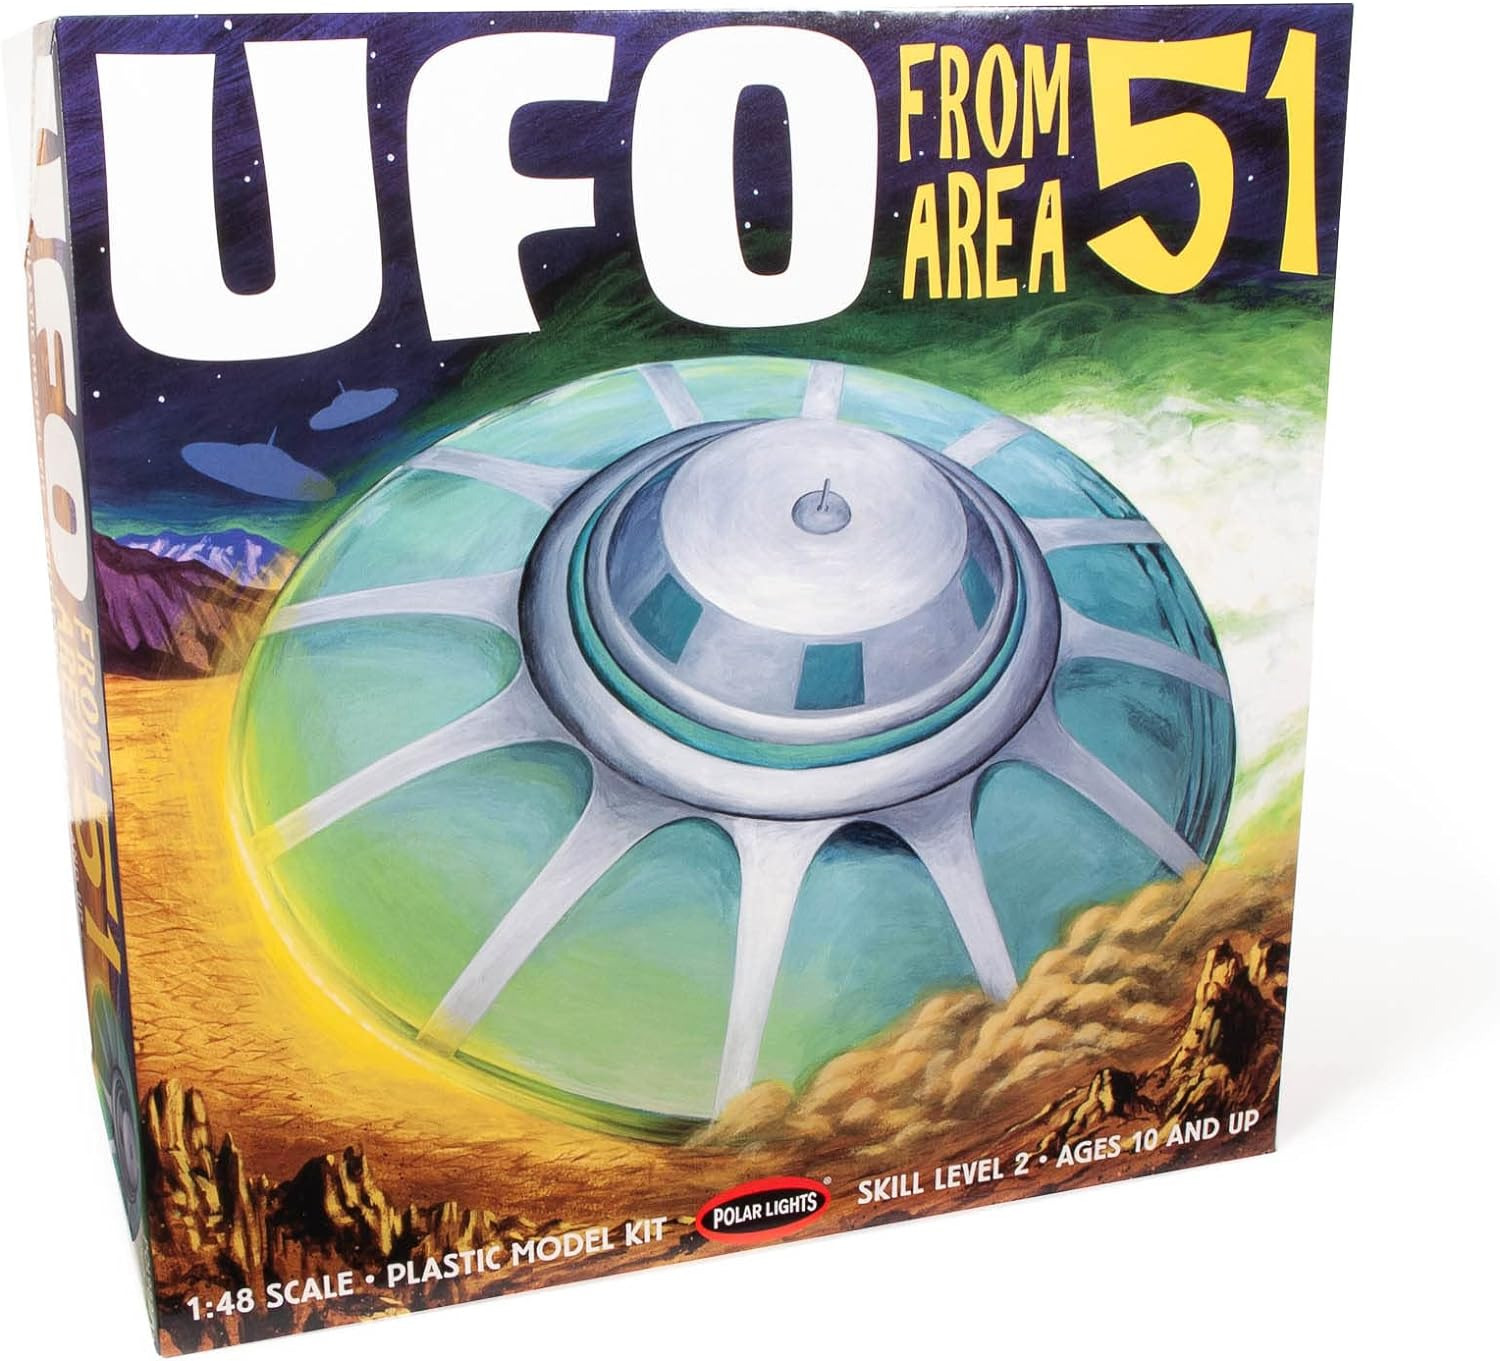 Area 51 UFO